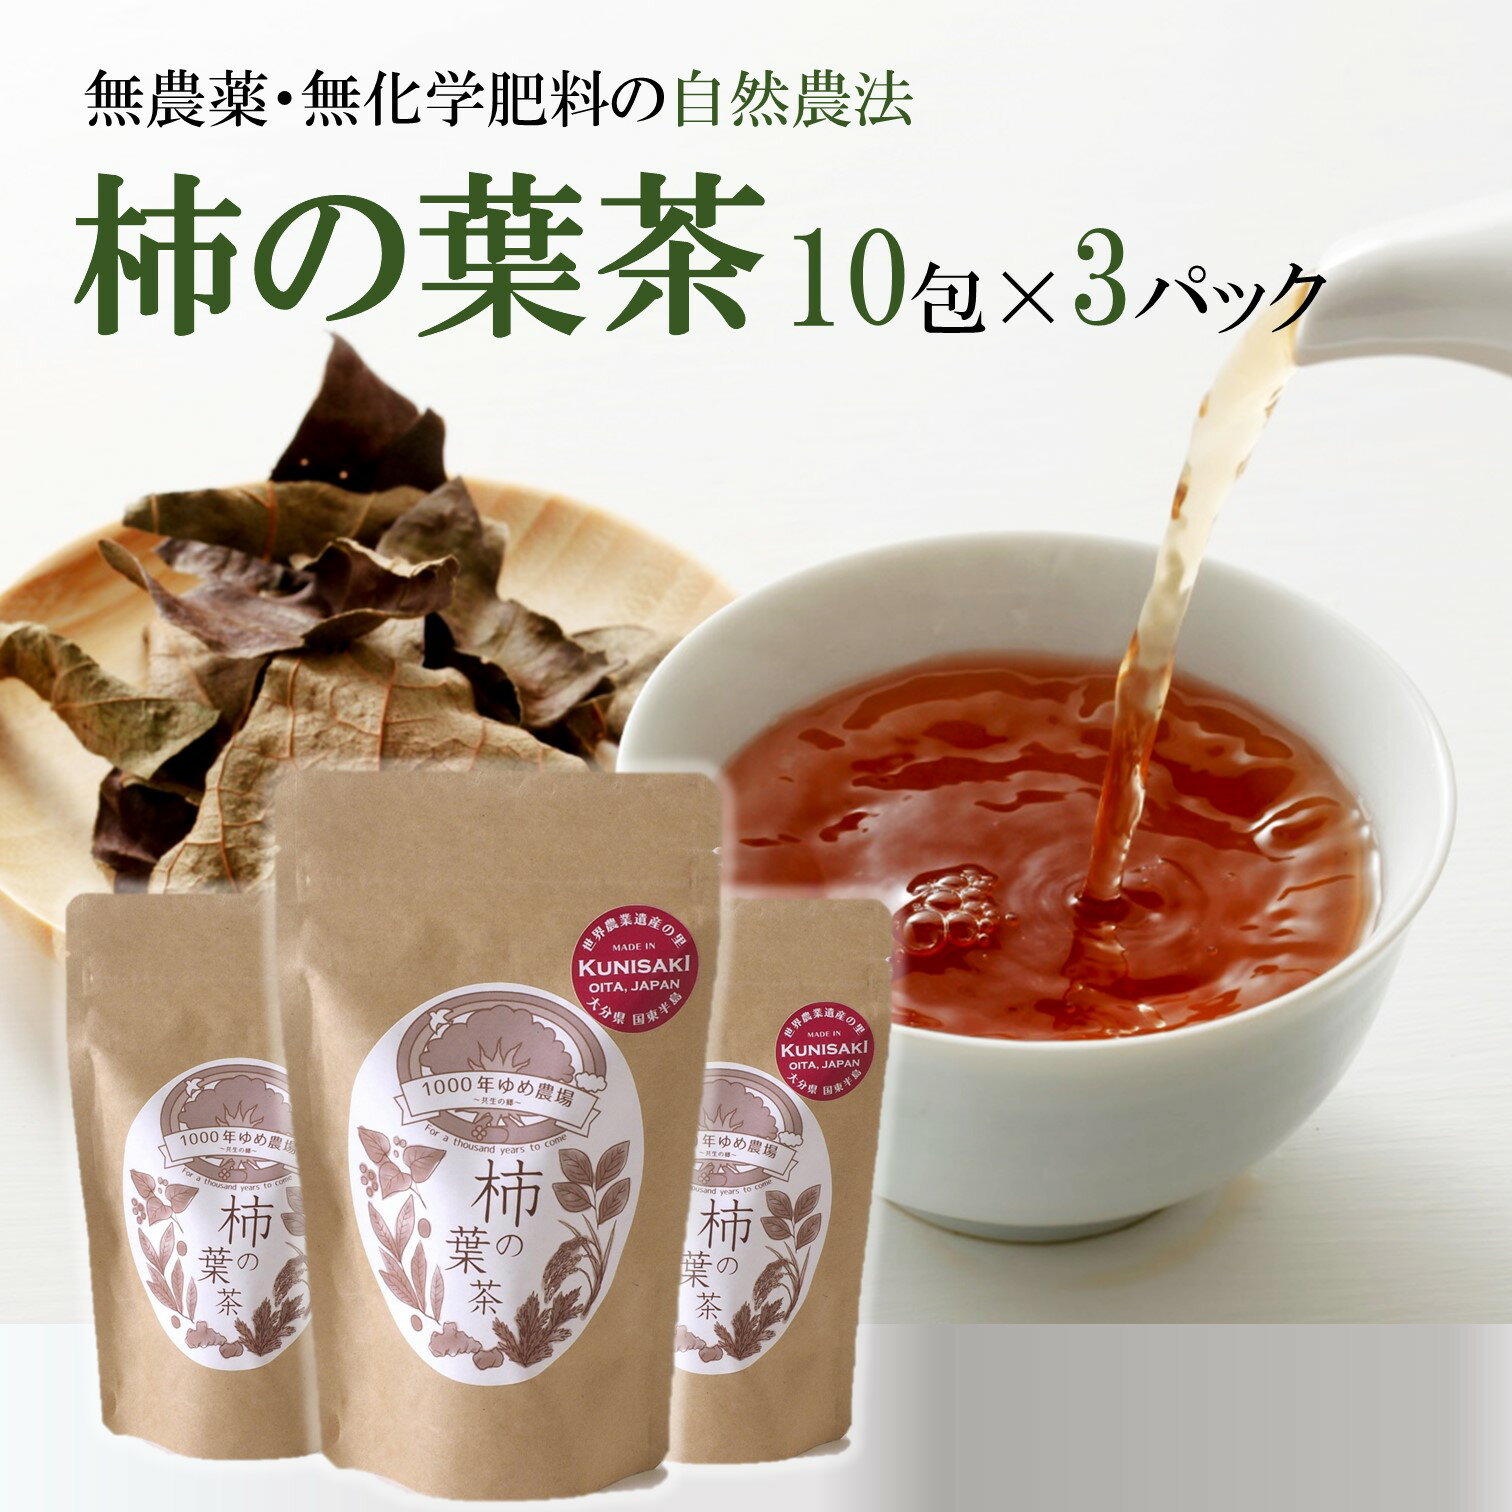 1000年ゆめ農場「柿の葉茶」10包×3パック